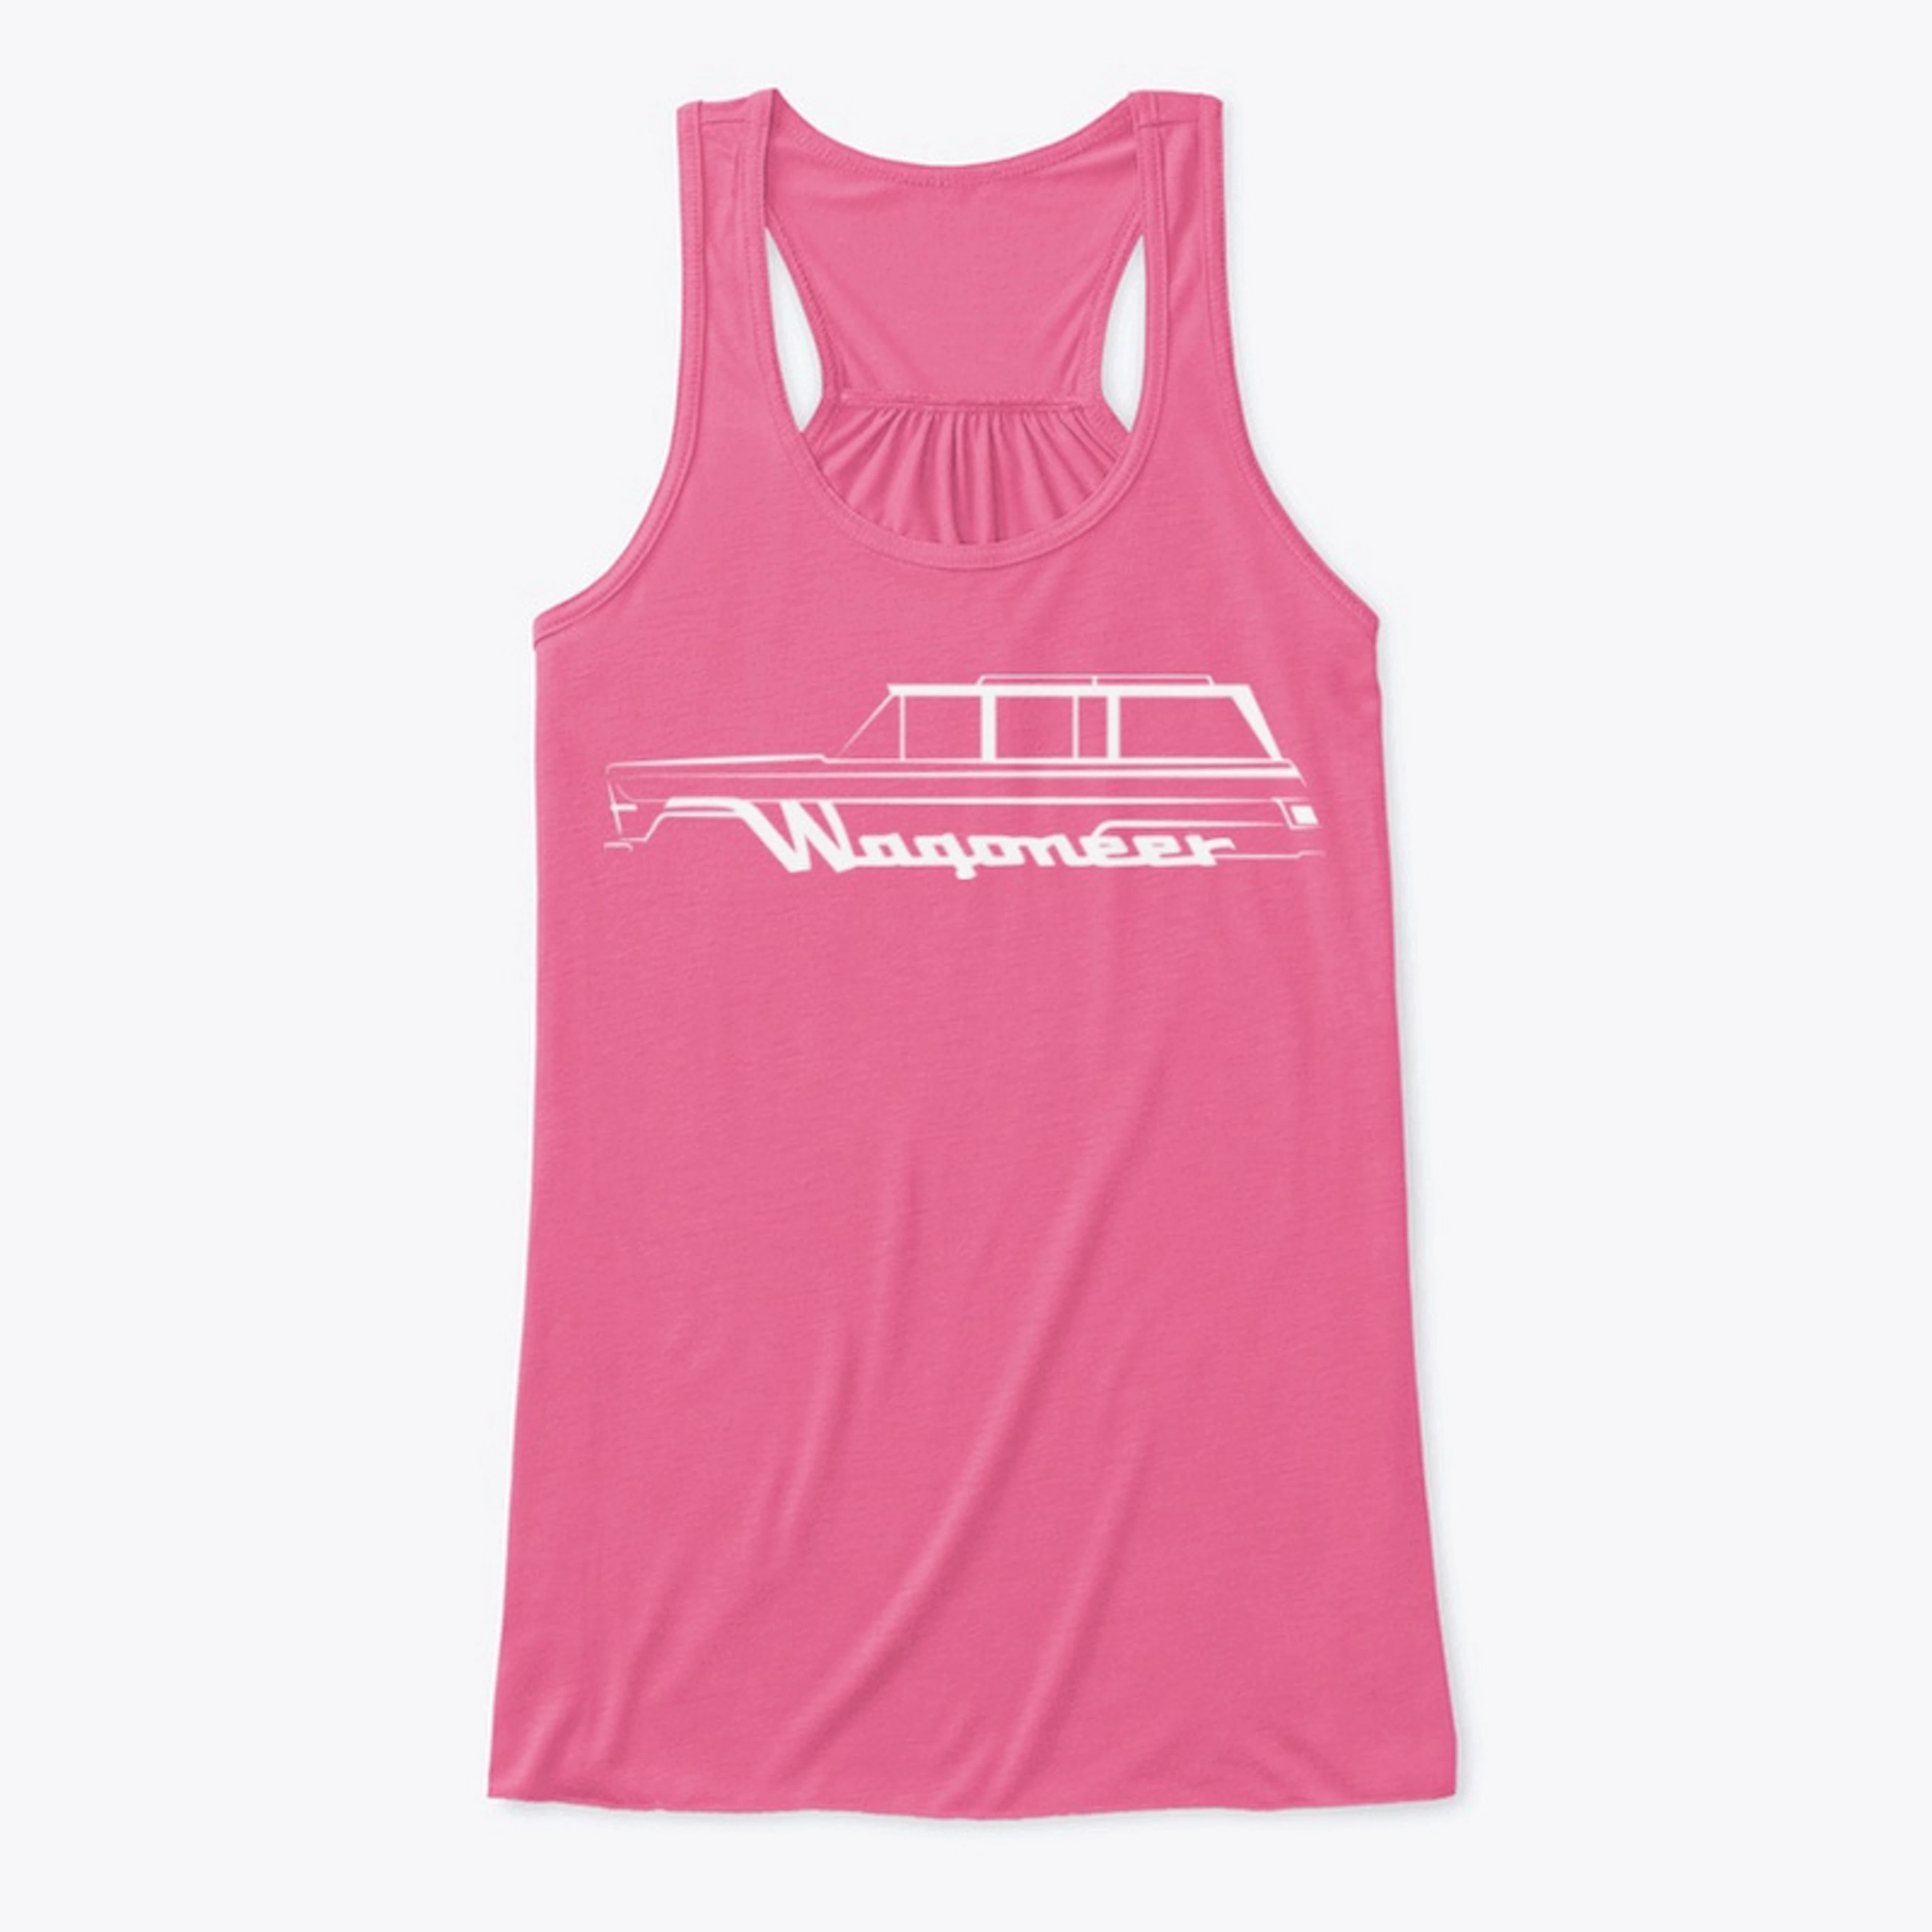 Wagoneer Trails White Logo Women's